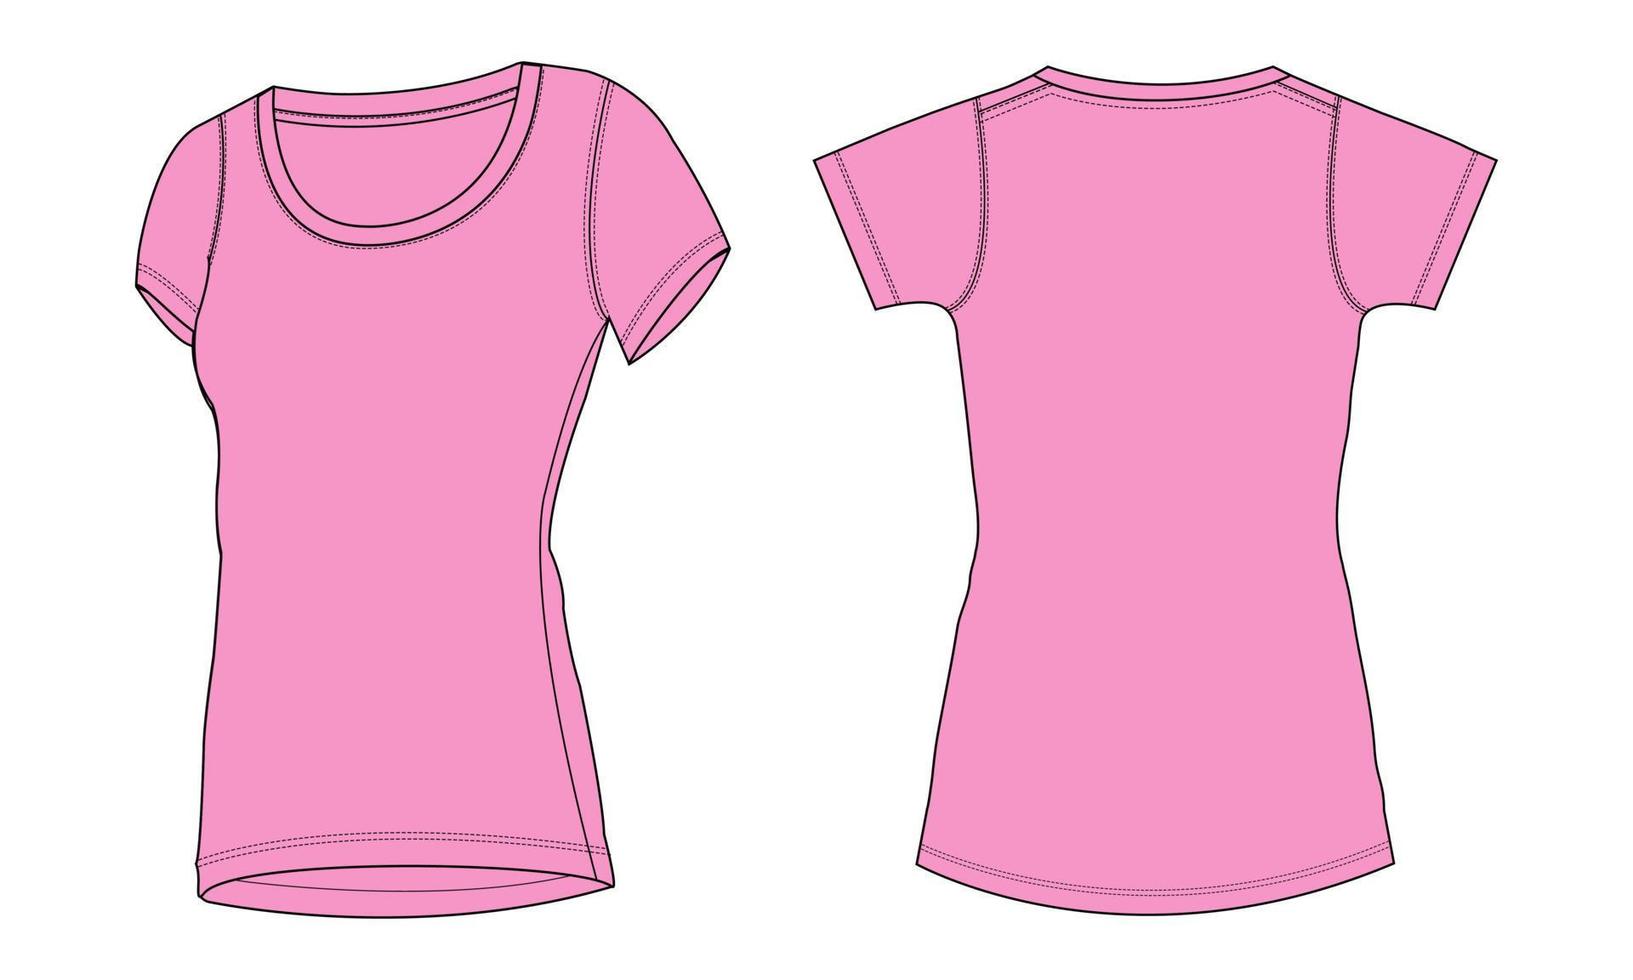 camiseta slim fit de manga curta ilustração vetorial de desenho plano de moda técnica modelo de cor roxa para senhoras vetor